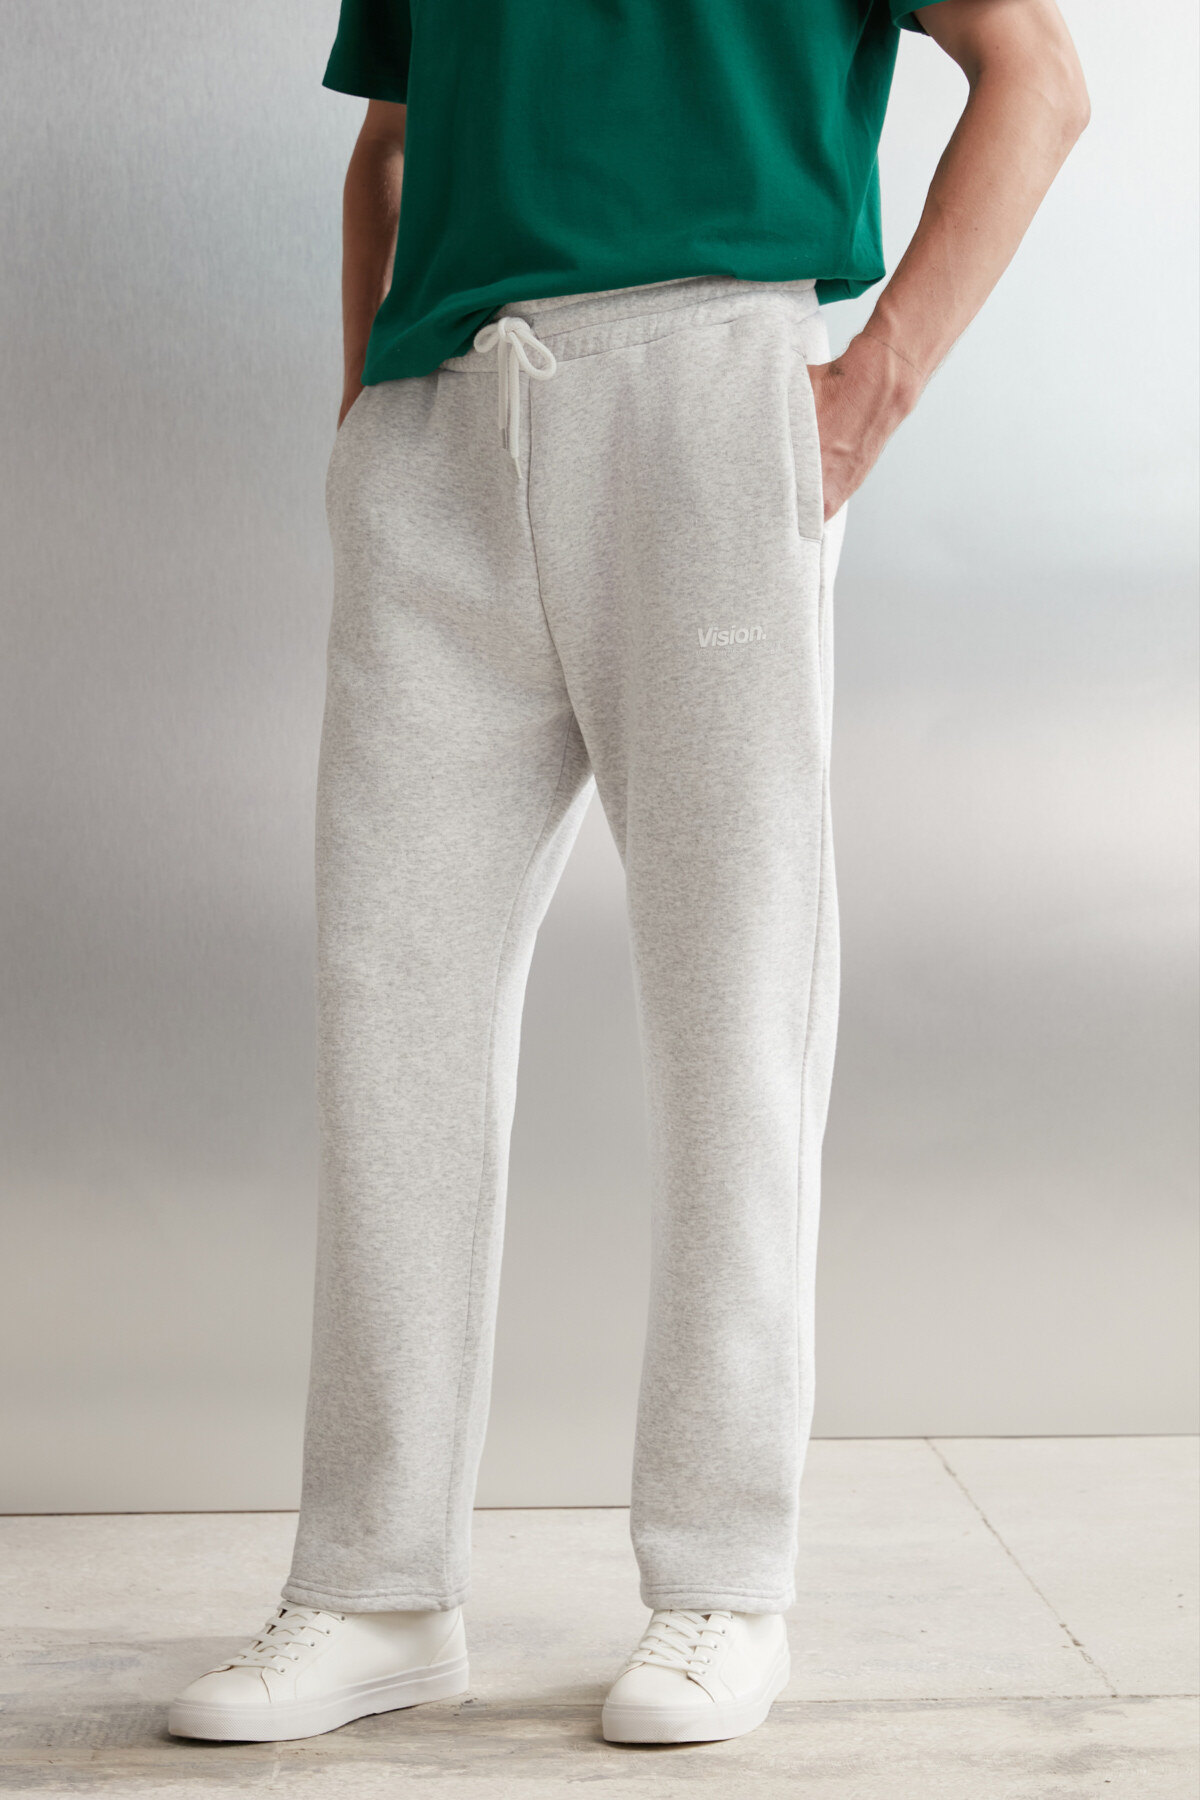 Levně GRIMELANGE Freddy Men's Regular Fit Soft Fabric Printed 3-Pocket Carmelange Sweatpant